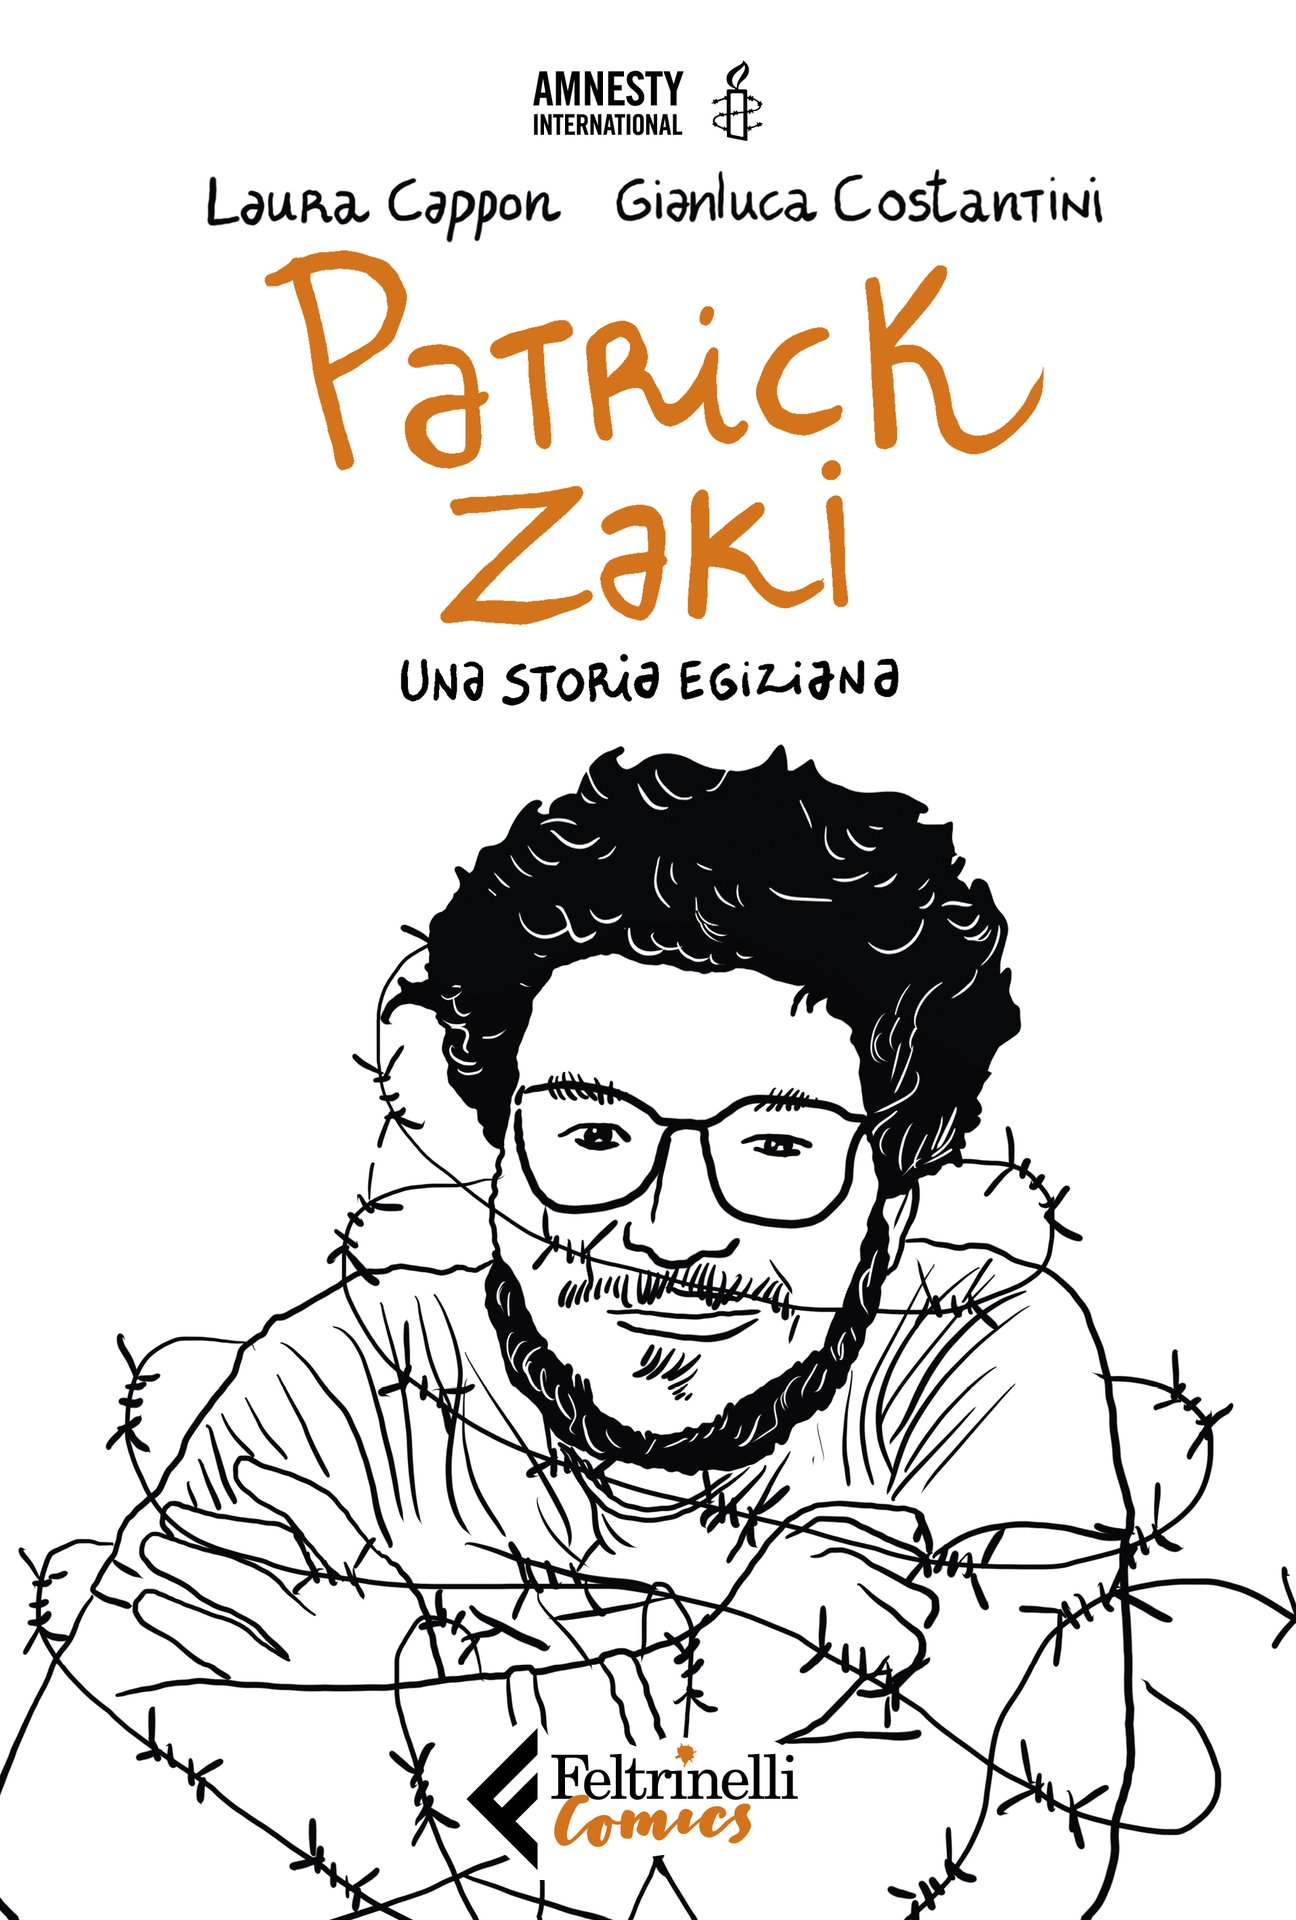 La storia di Patrick Zaki diventa una graphic novel